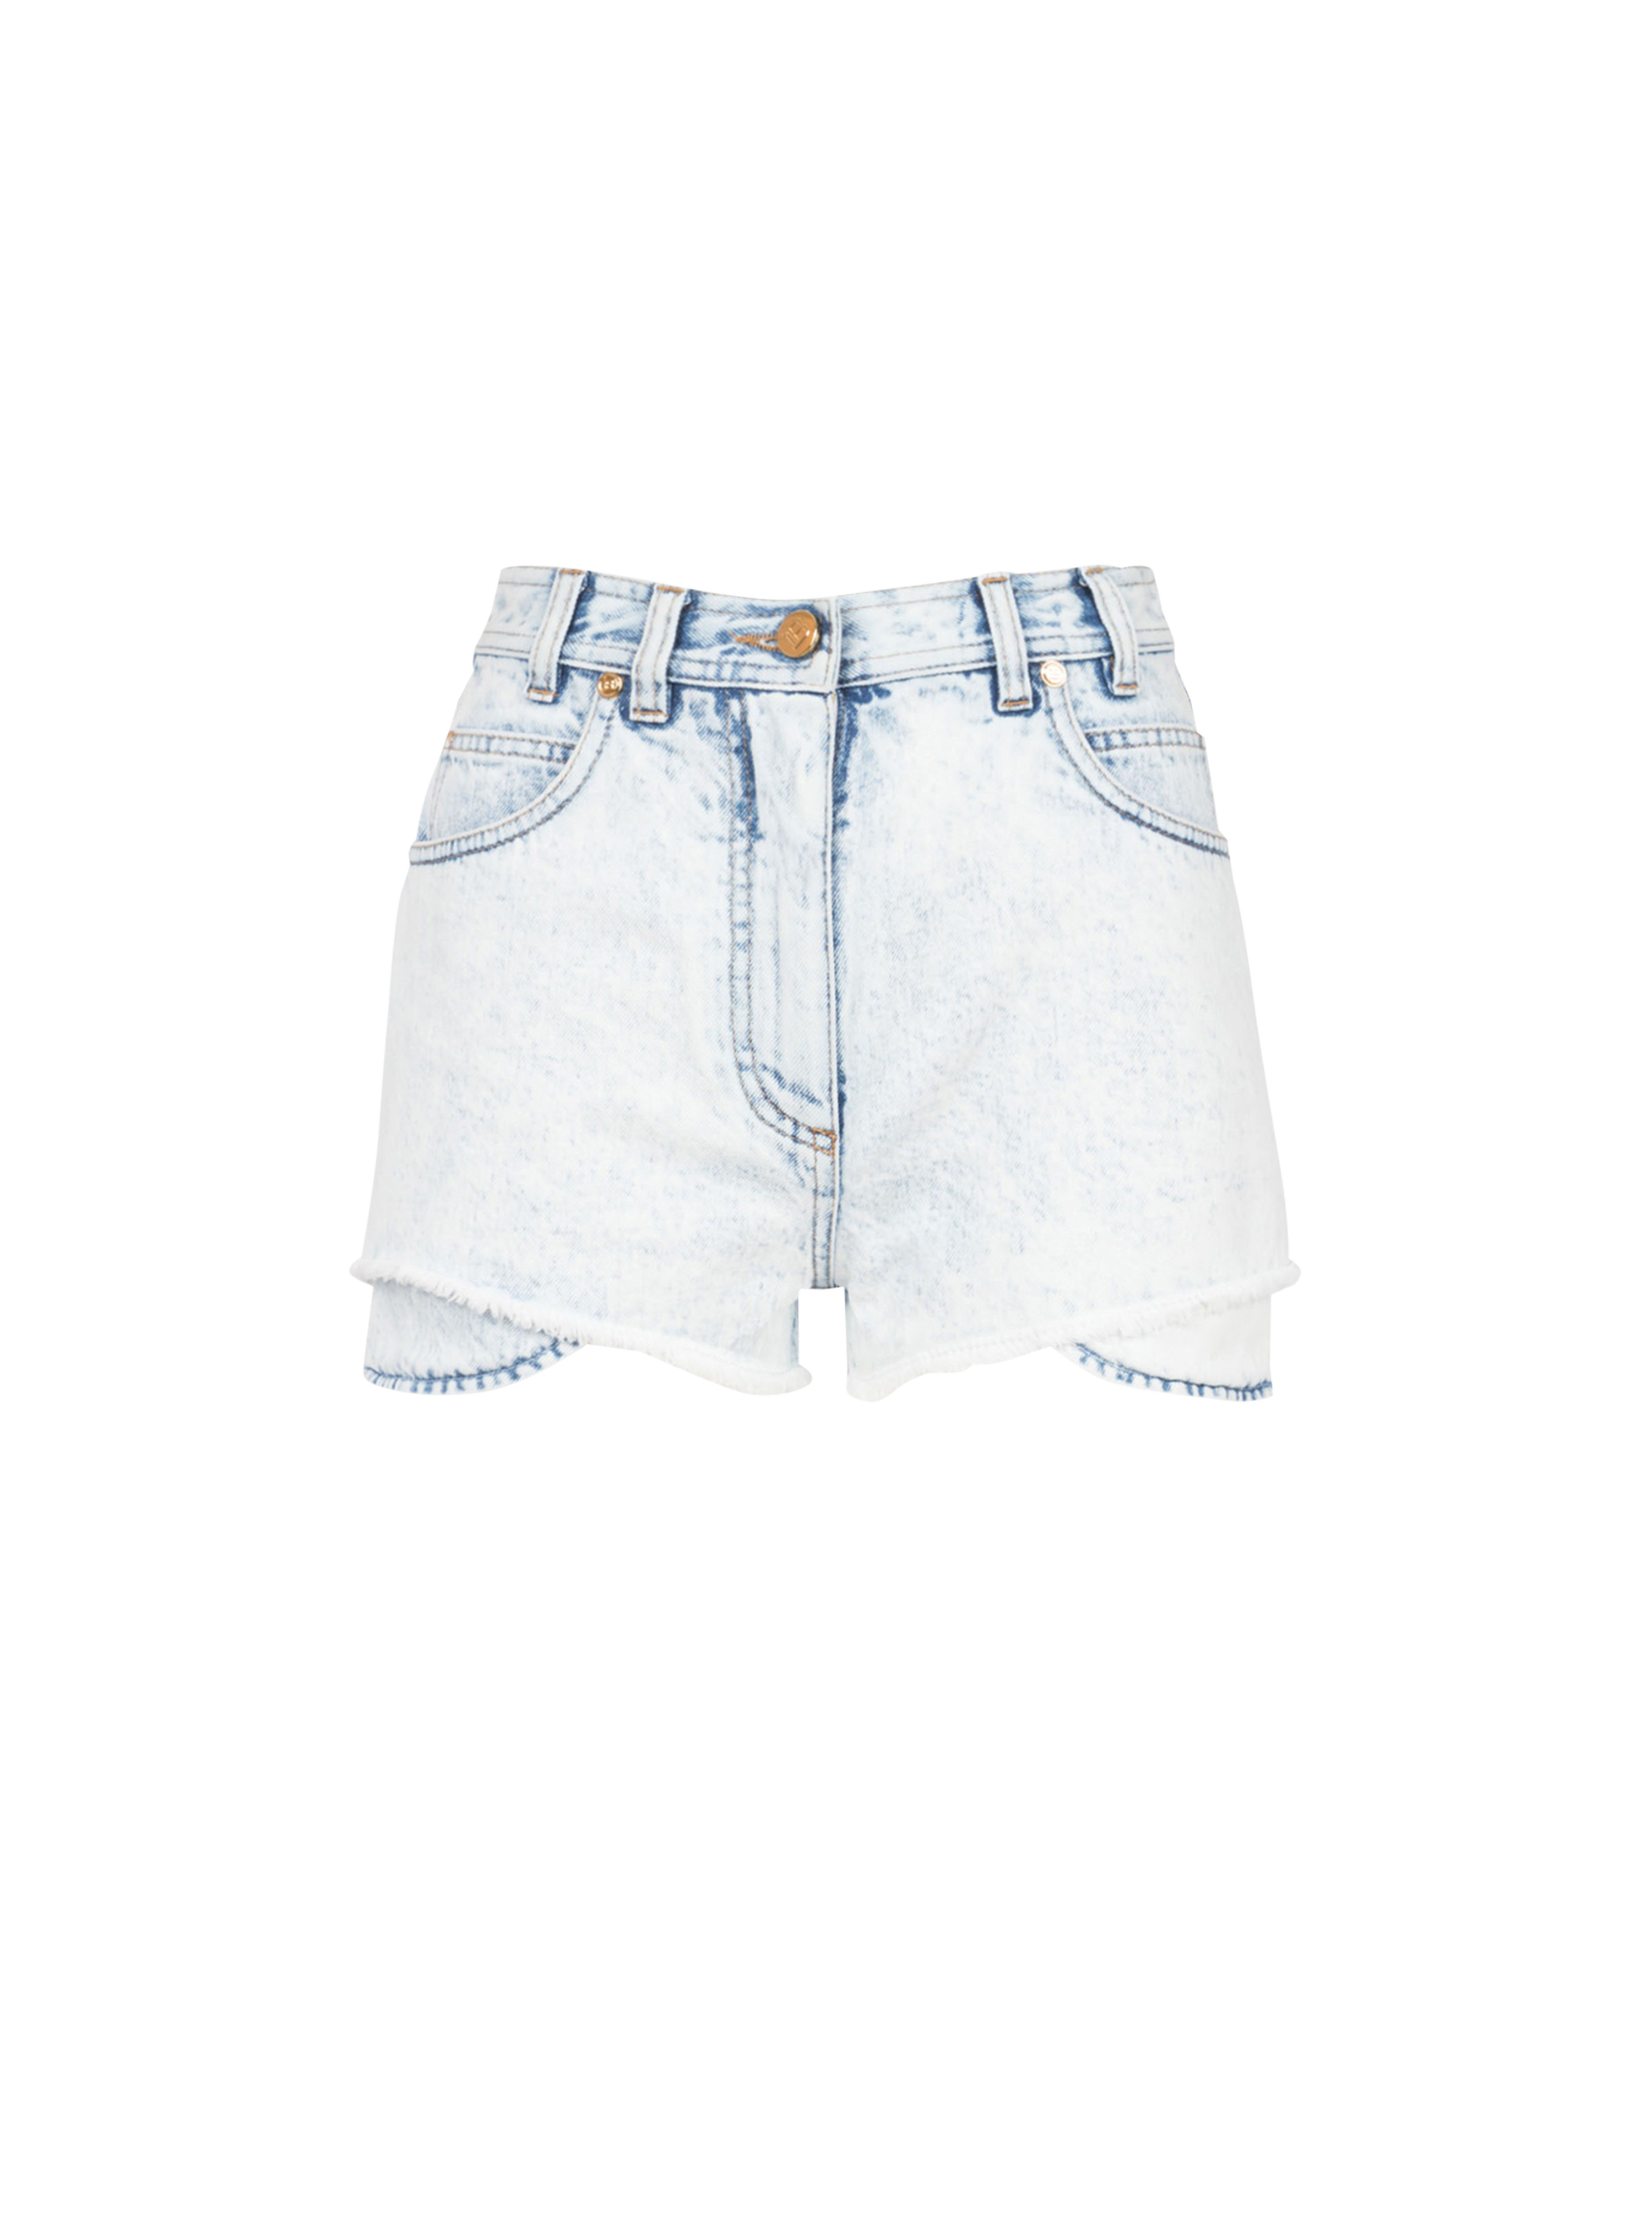 盛夏胶囊系列 - 高腰牛仔短裤, blue